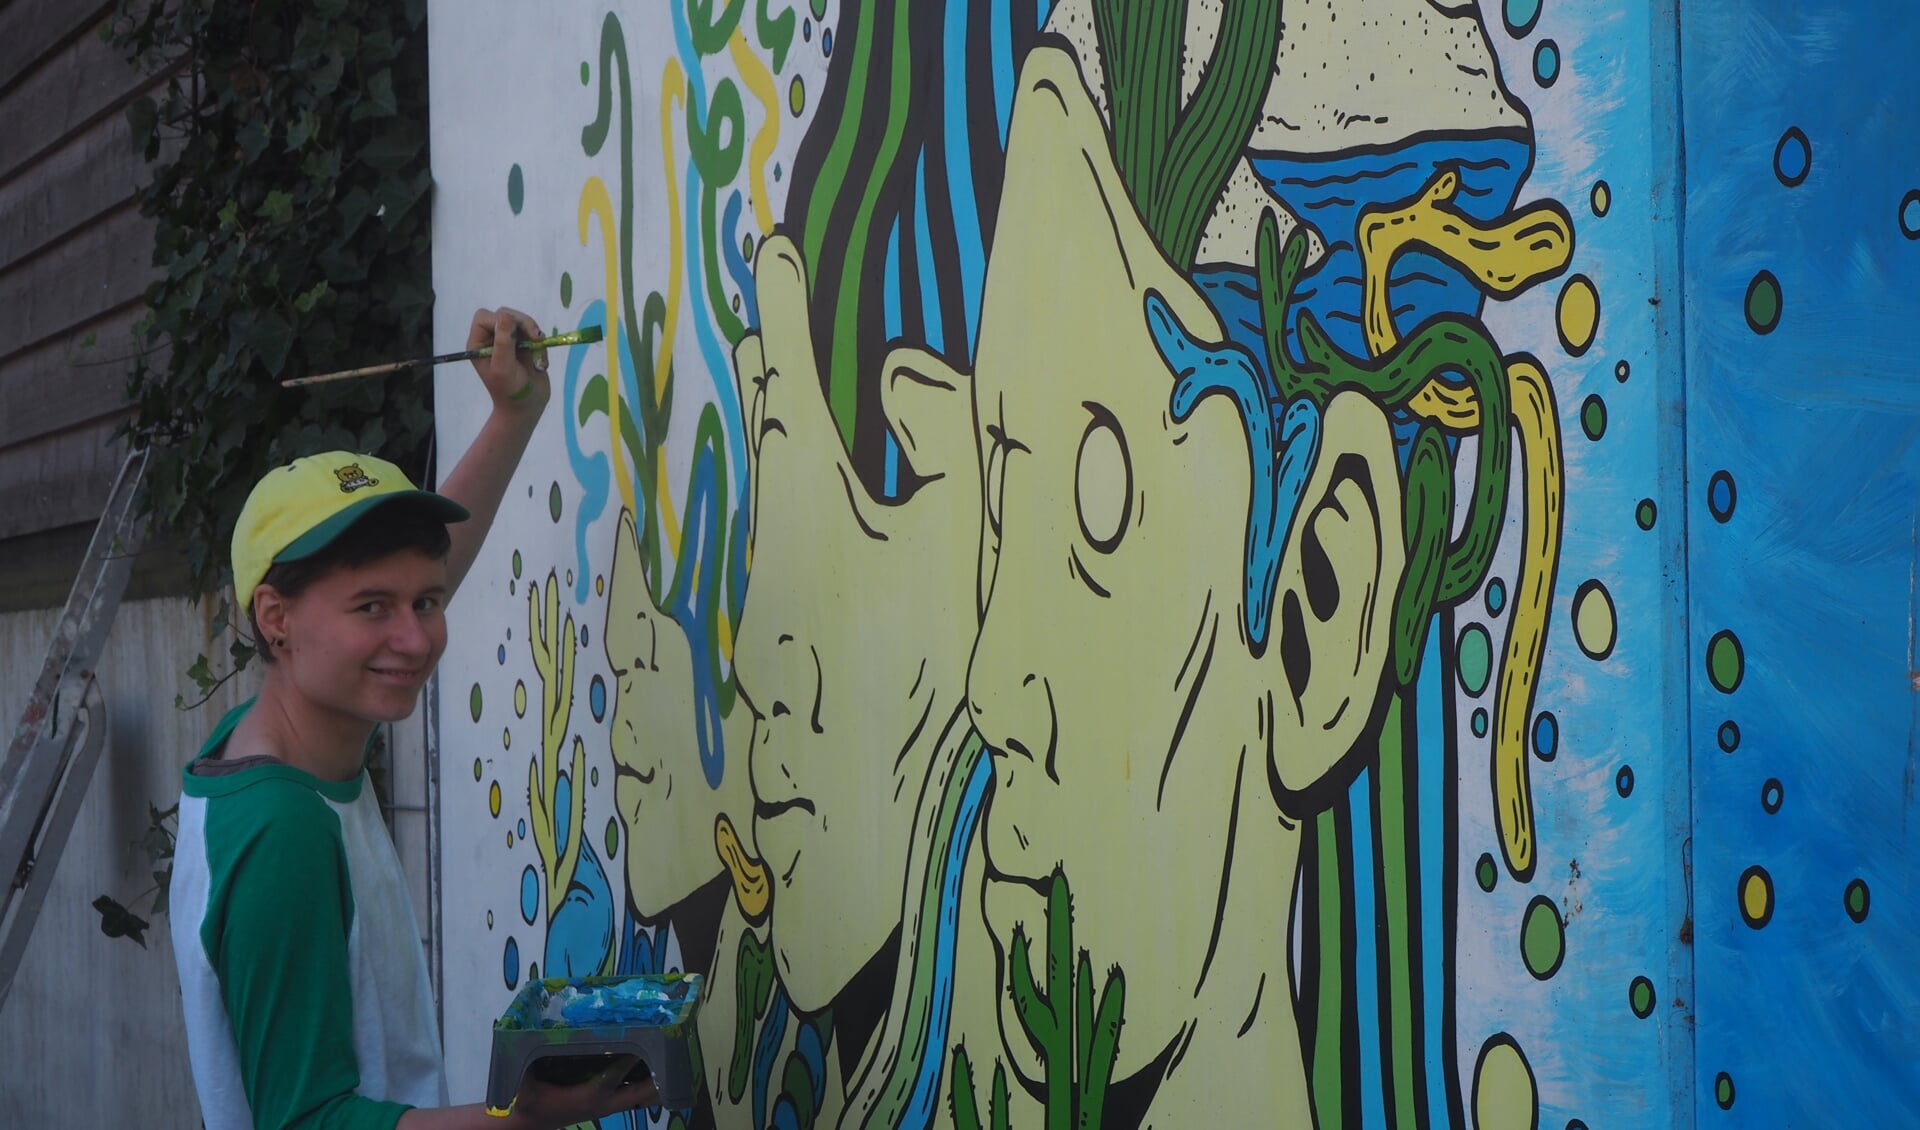 Sosse Serpenti aan het werk aan de muurschildering aan de Ganskuijl in Amersfoort.